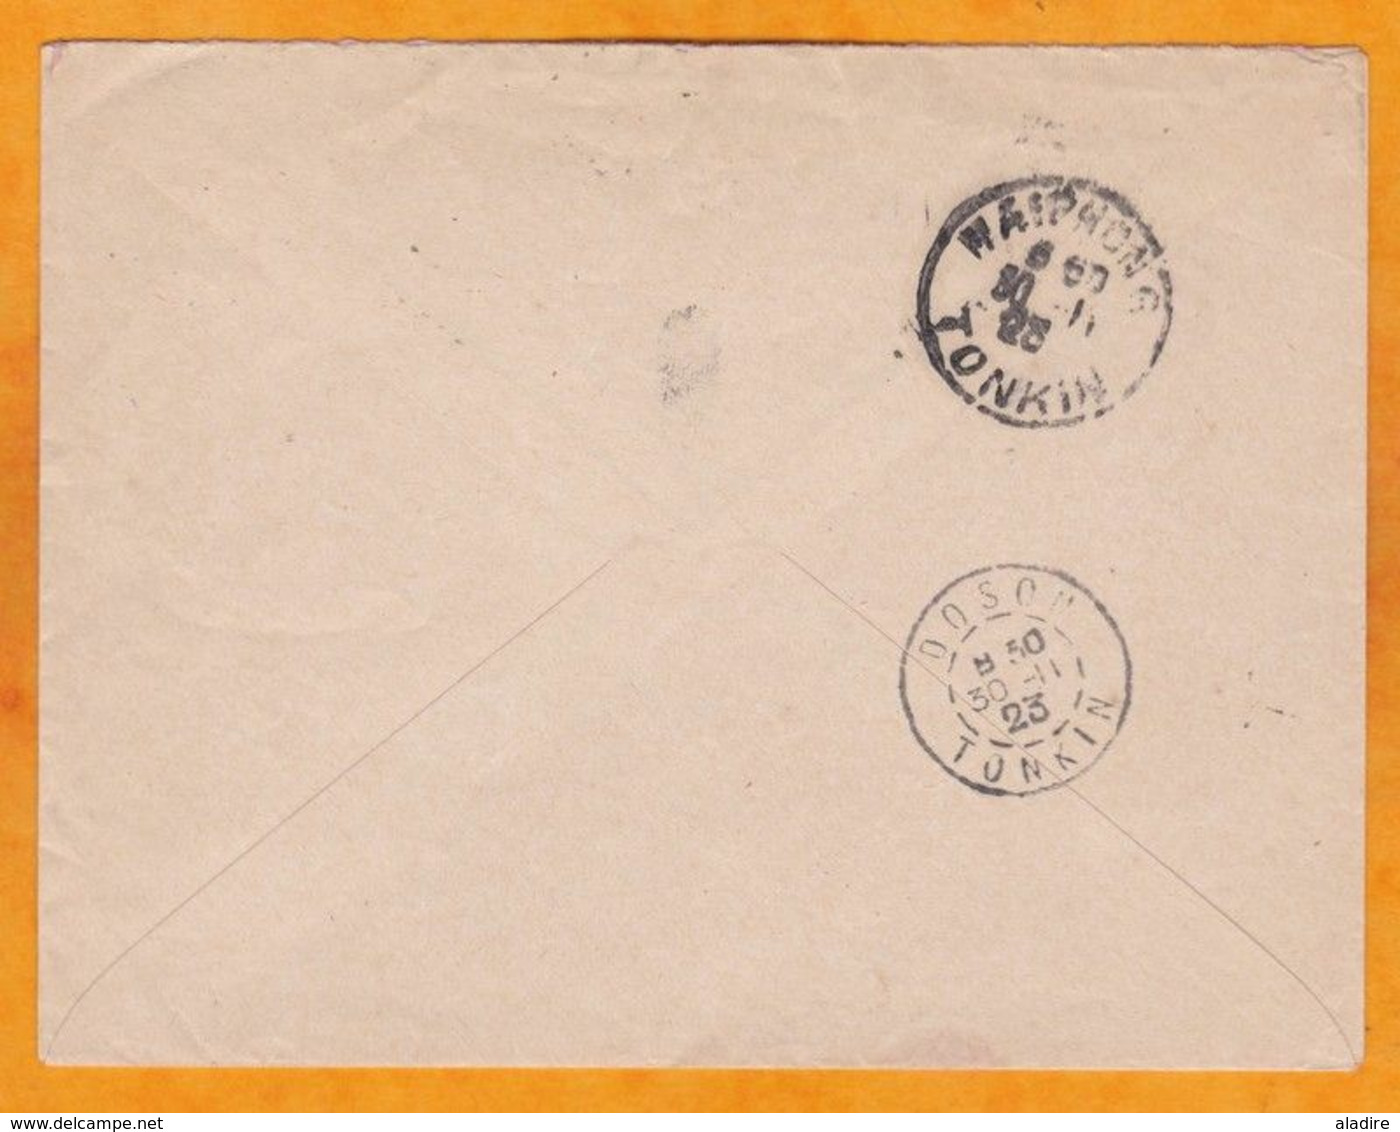 1923 - Entier Enveloppe 4 C Femme Annamite De Hanoi Vers Doson, Via Haiphong - Cad Transit & Arrivée - Lettres & Documents